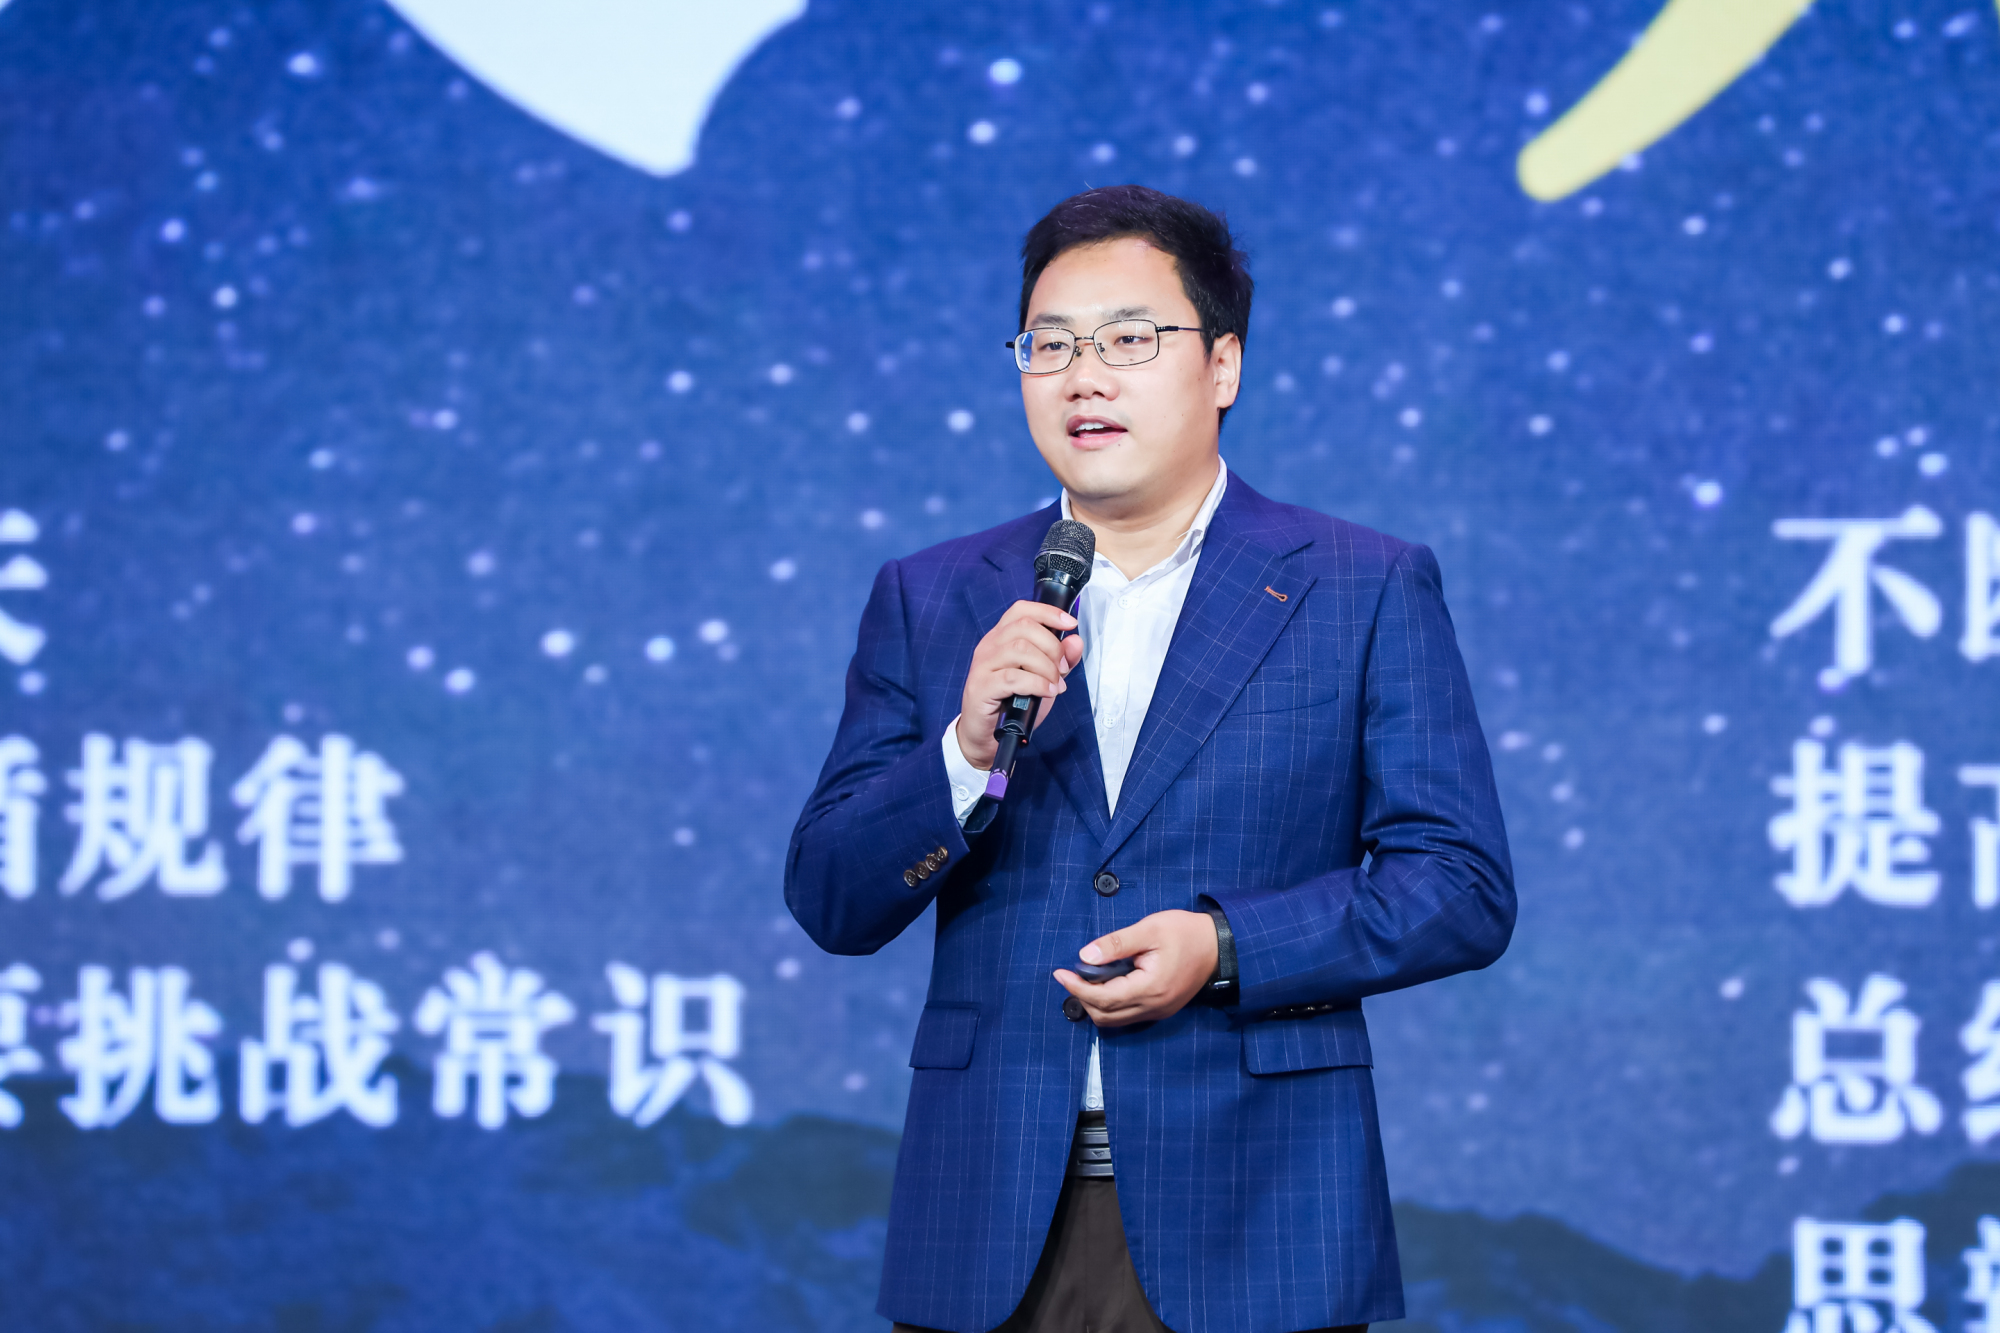 图集:希鸥网创始人李志磊在第九届中国创新创业领袖峰会